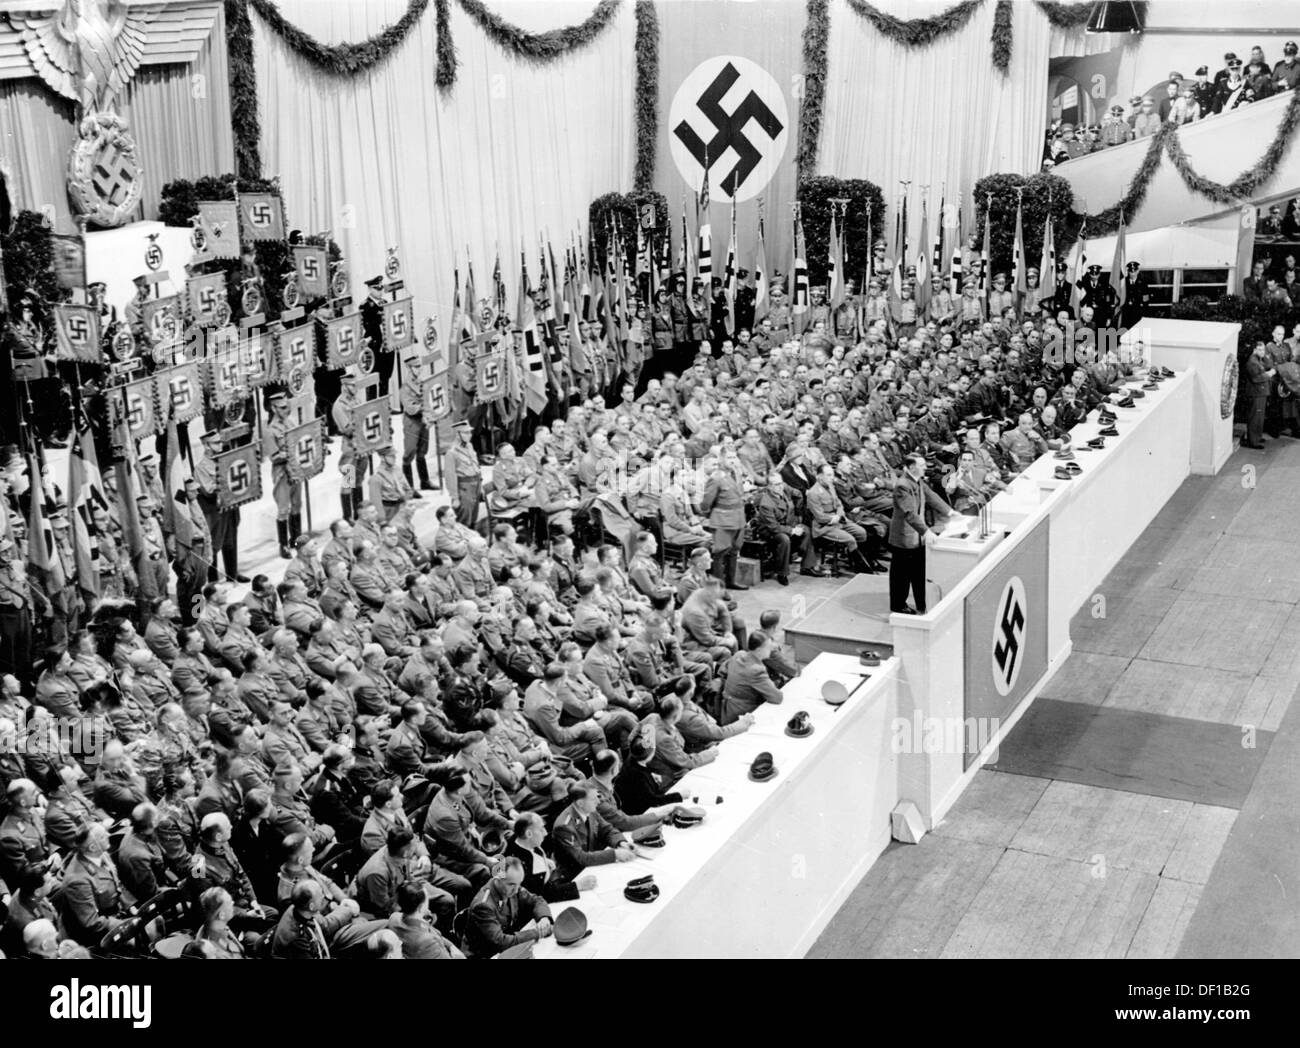 L'image de la propagande nazie! Spectacles le chancelier de Reich Adolf Hitler prononcera un discours à l'occasion de l'ouverture du Winterhilfswerk (secours d'hiver) de l'hiver 1941/42 dans le Sportpalast de Berlin, Allemagne, 3 octobre 1941. Fotoarchiv für Zeitgeschichte Banque D'Images